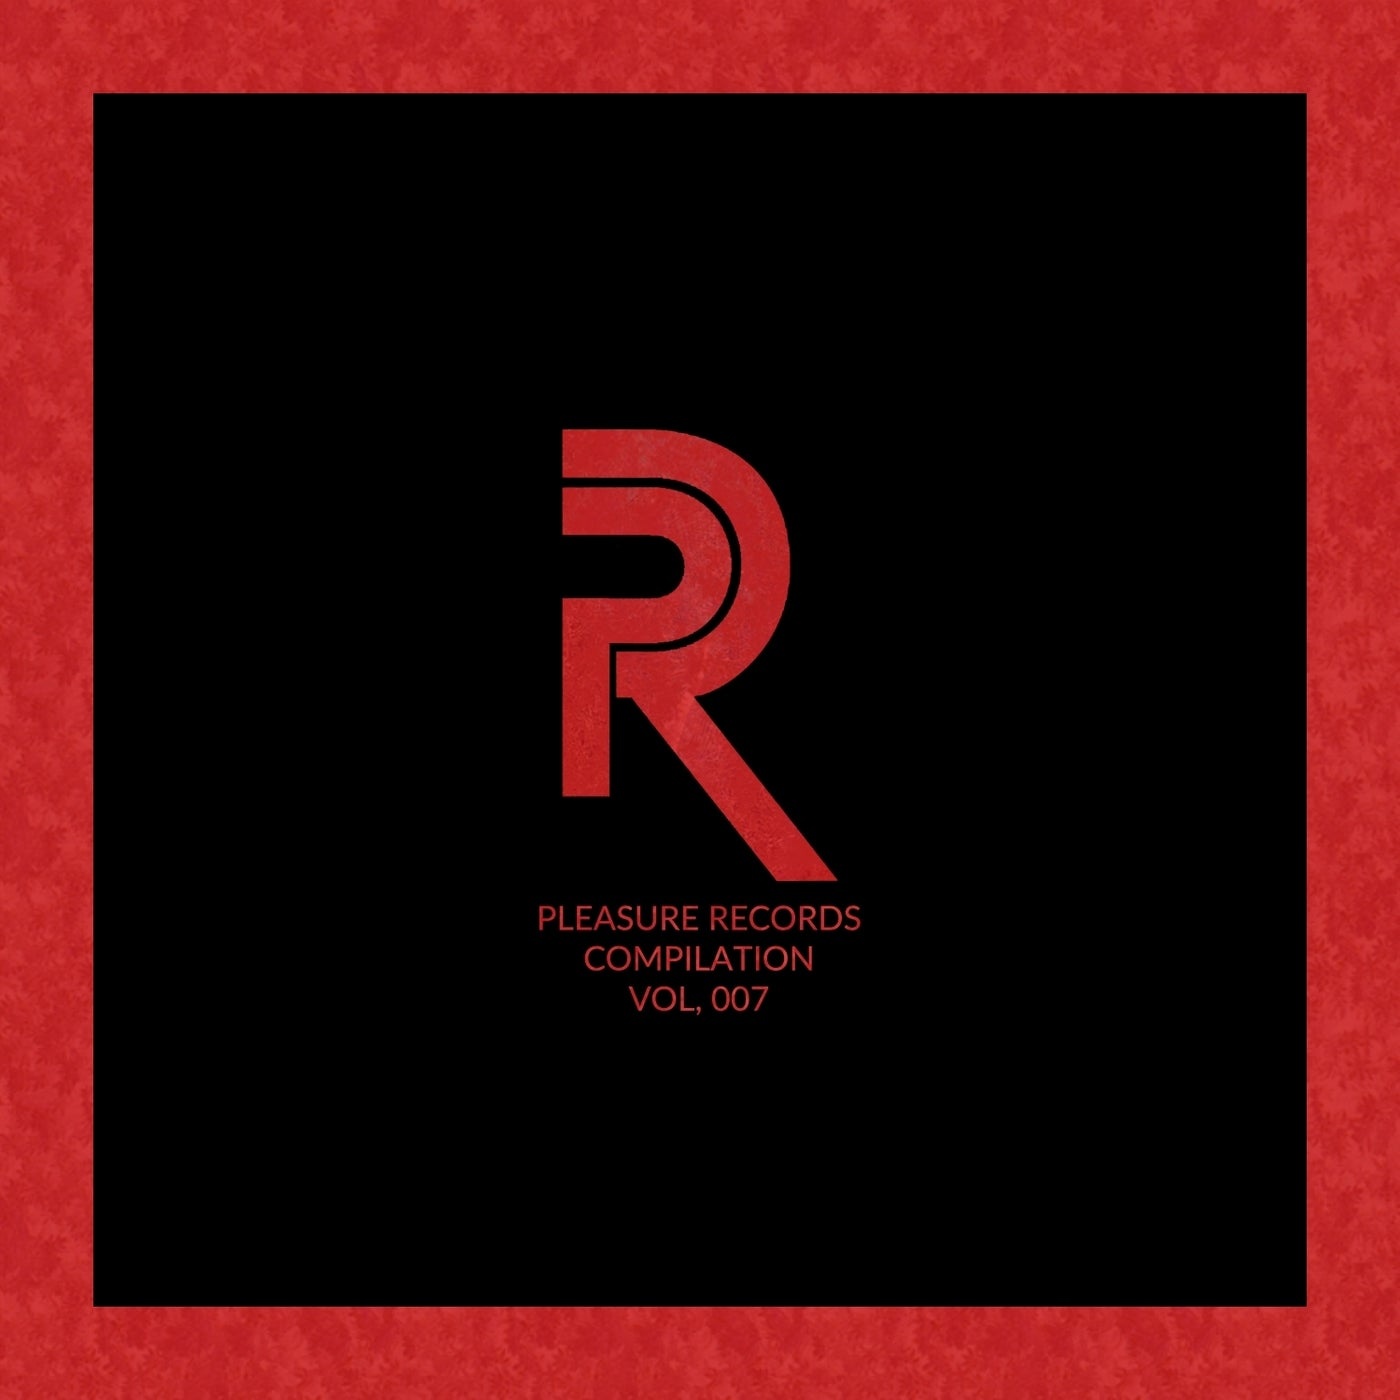 VA - Pleasure Records Compilation, Vol. 7 [PLERCOMP007]